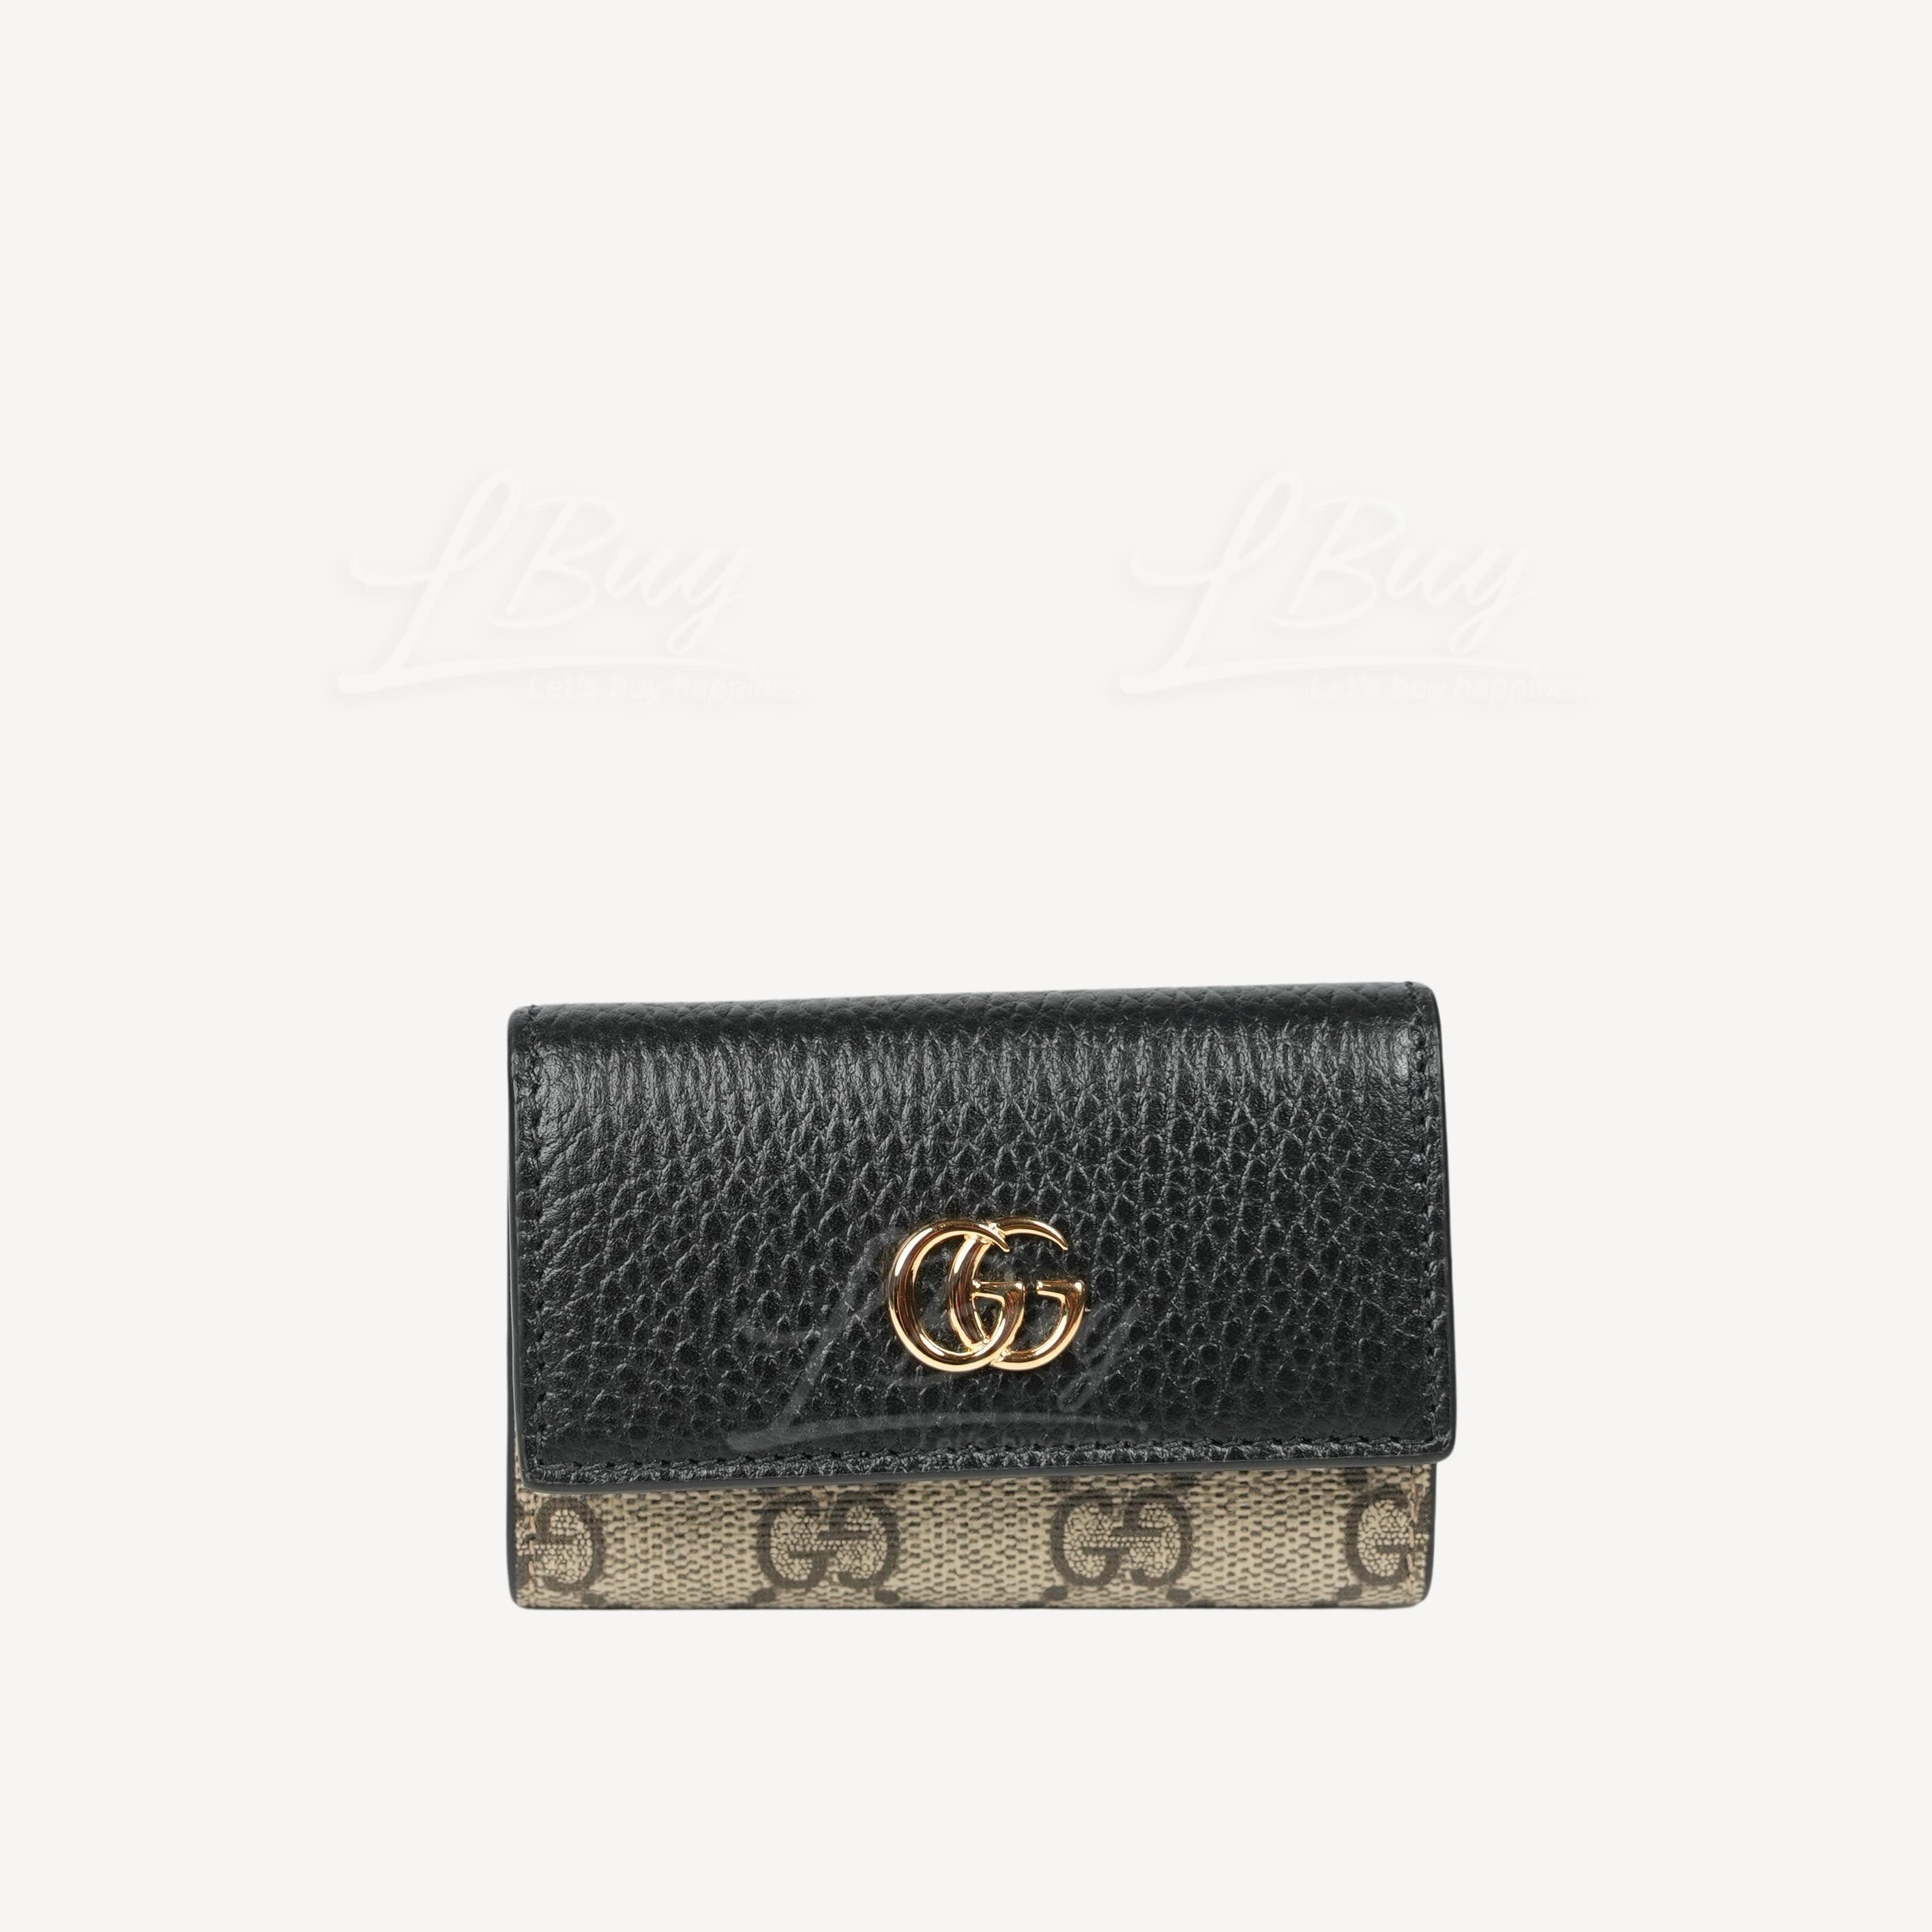 Gucci GG Logo MARMONT皮革钥匙包 黑色 456118